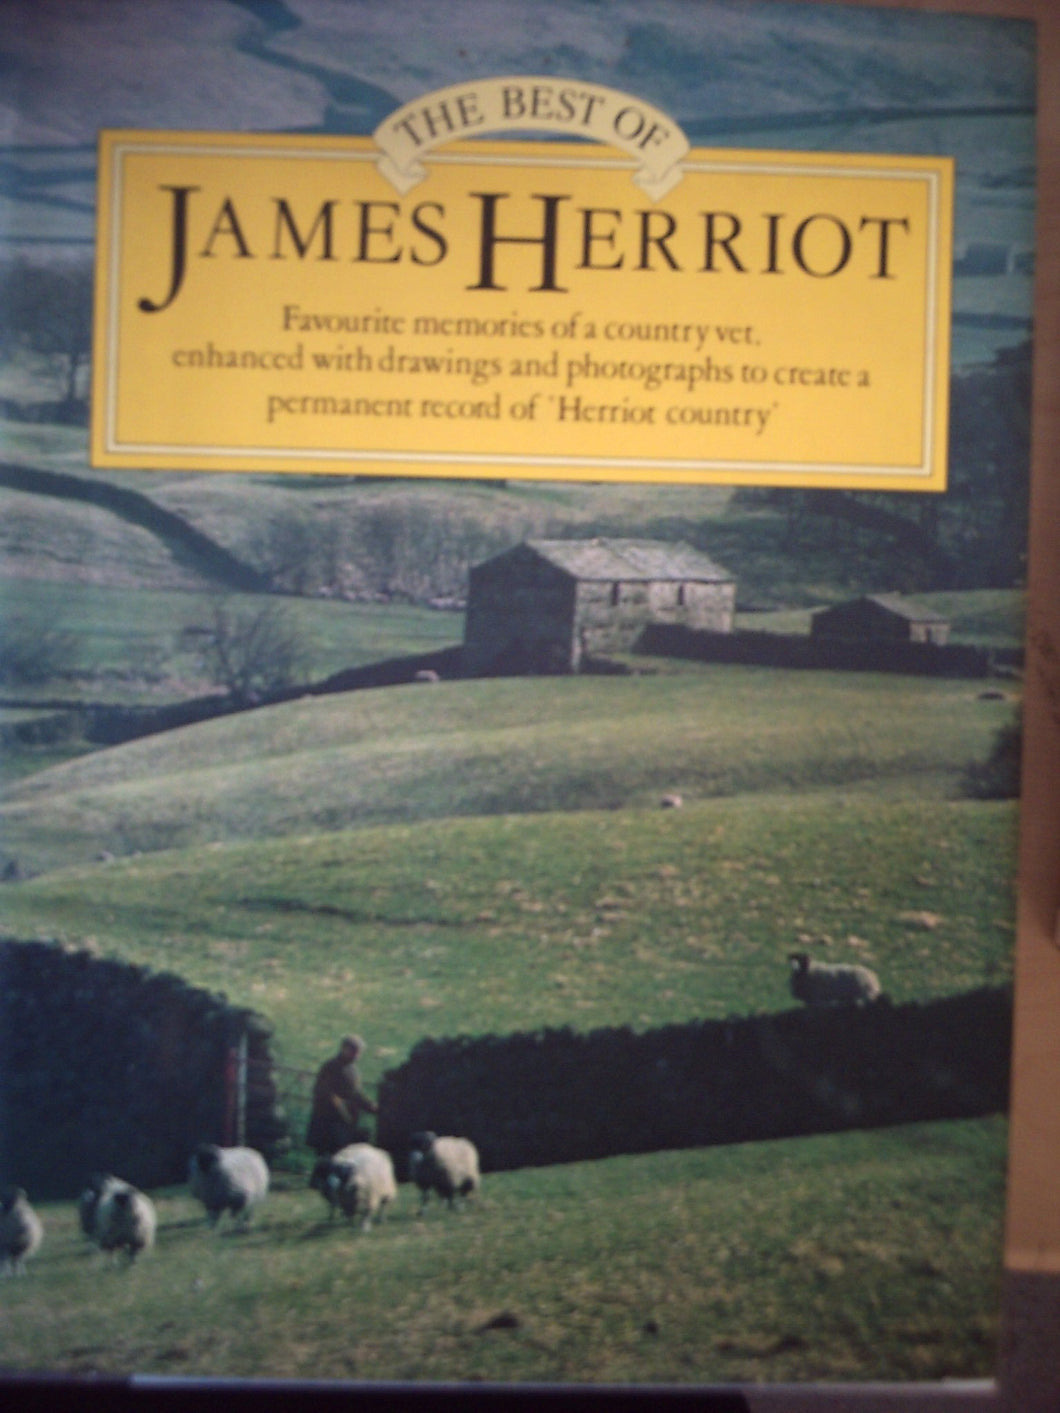 The Best of James Herriot: Favourite Memories of a Country Vet Herriot, James